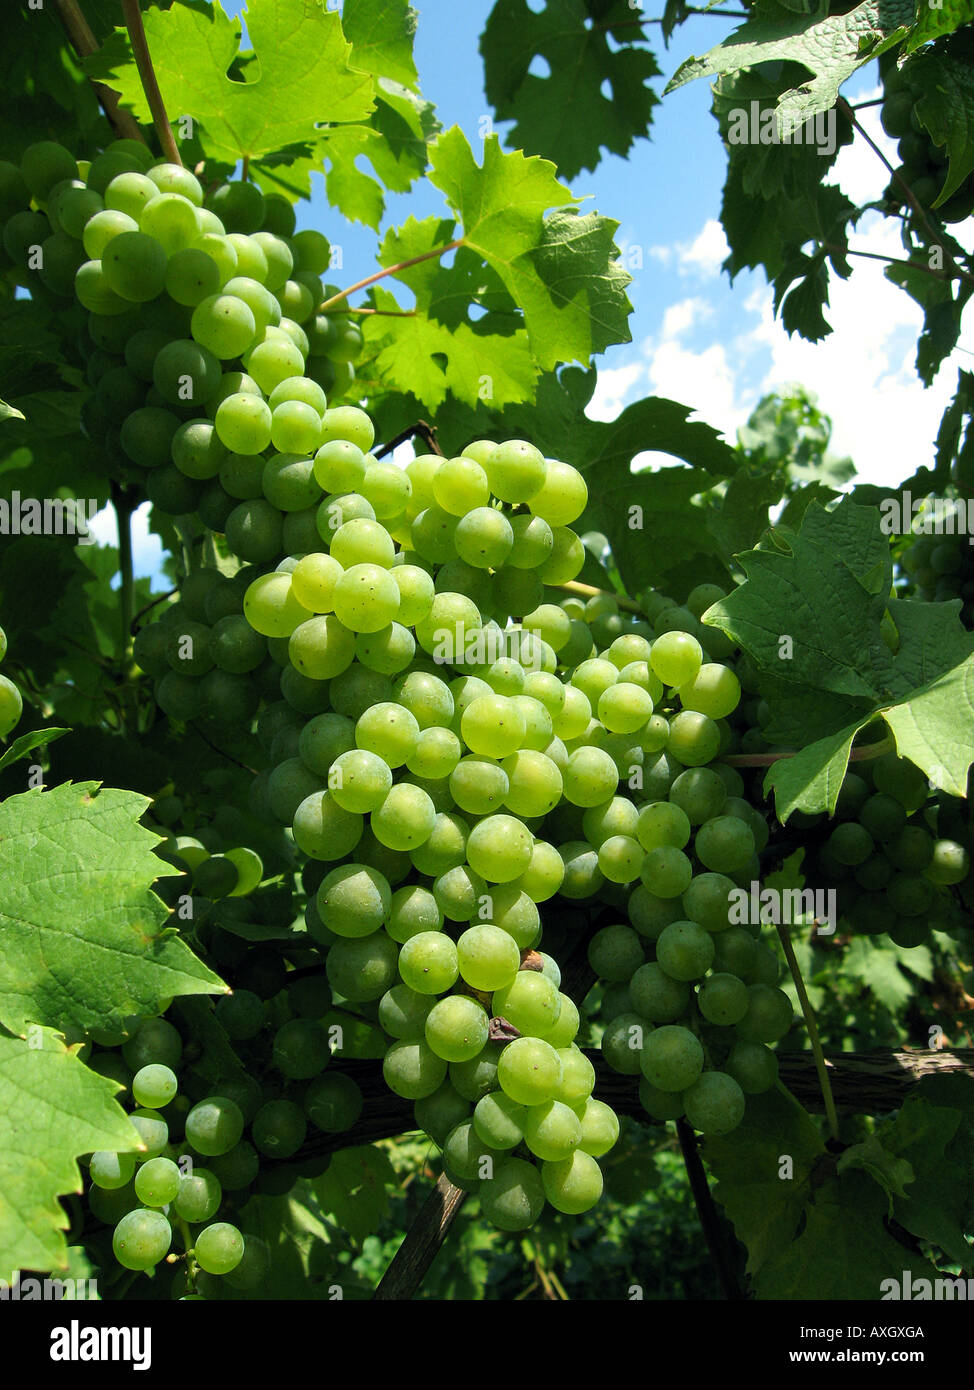 green grapes grüne Weintrauben Trauben Stock Photo